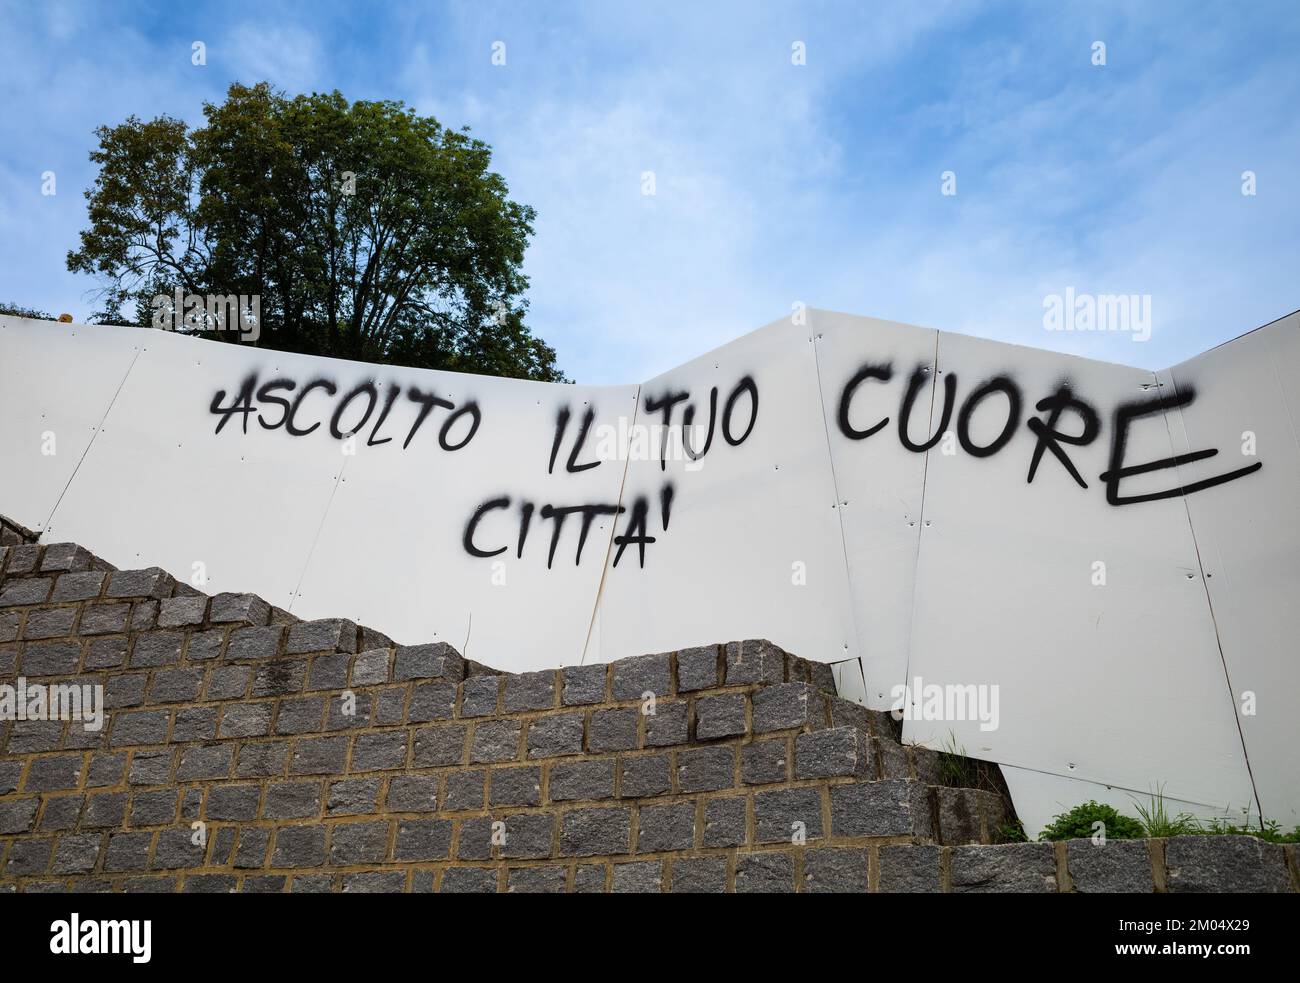 Lugano, Svizzera - 1 ottobre 2022: Iscrizione italiana sul muro - traduzione inglese: Ascolto il tuo cuore, la tua città Foto Stock